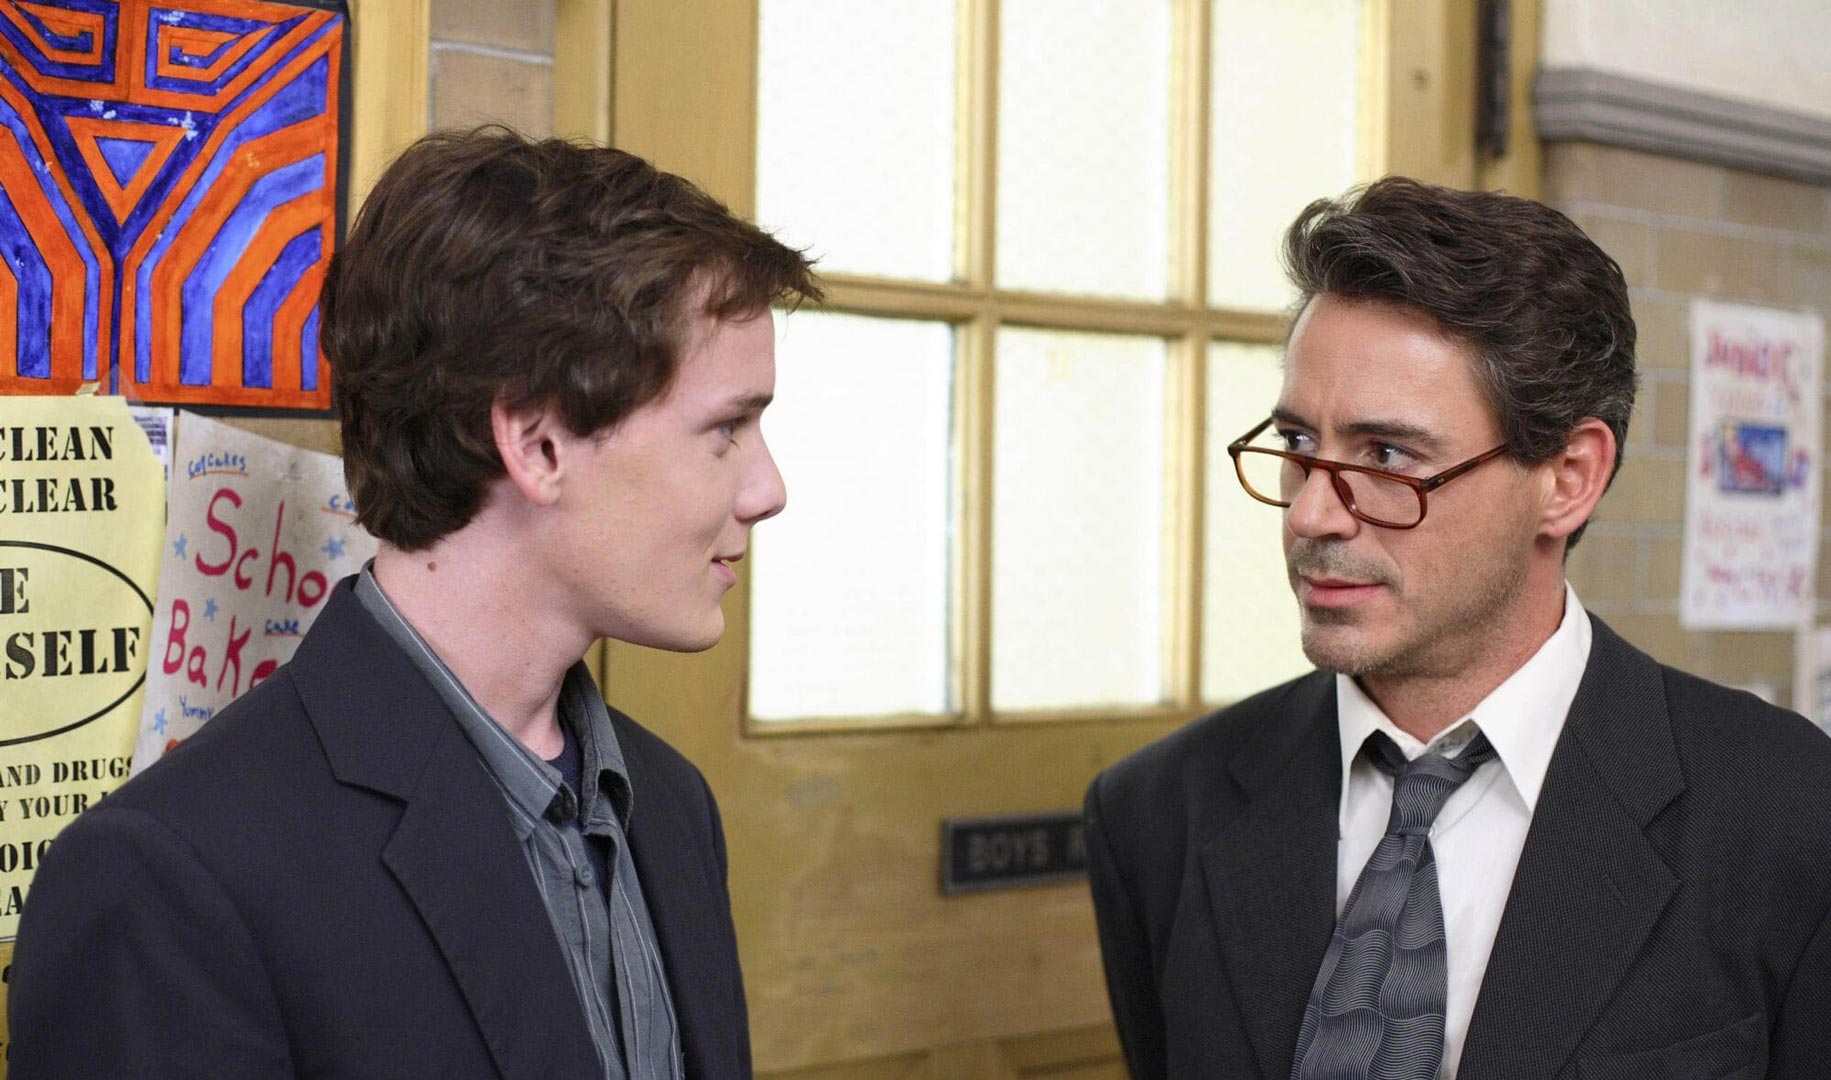 داونی جونیور در نقش مدیر مدرسه از بالای عینک به دانش آموز سرکش با بازی آنتون یلچین نگاه میکند